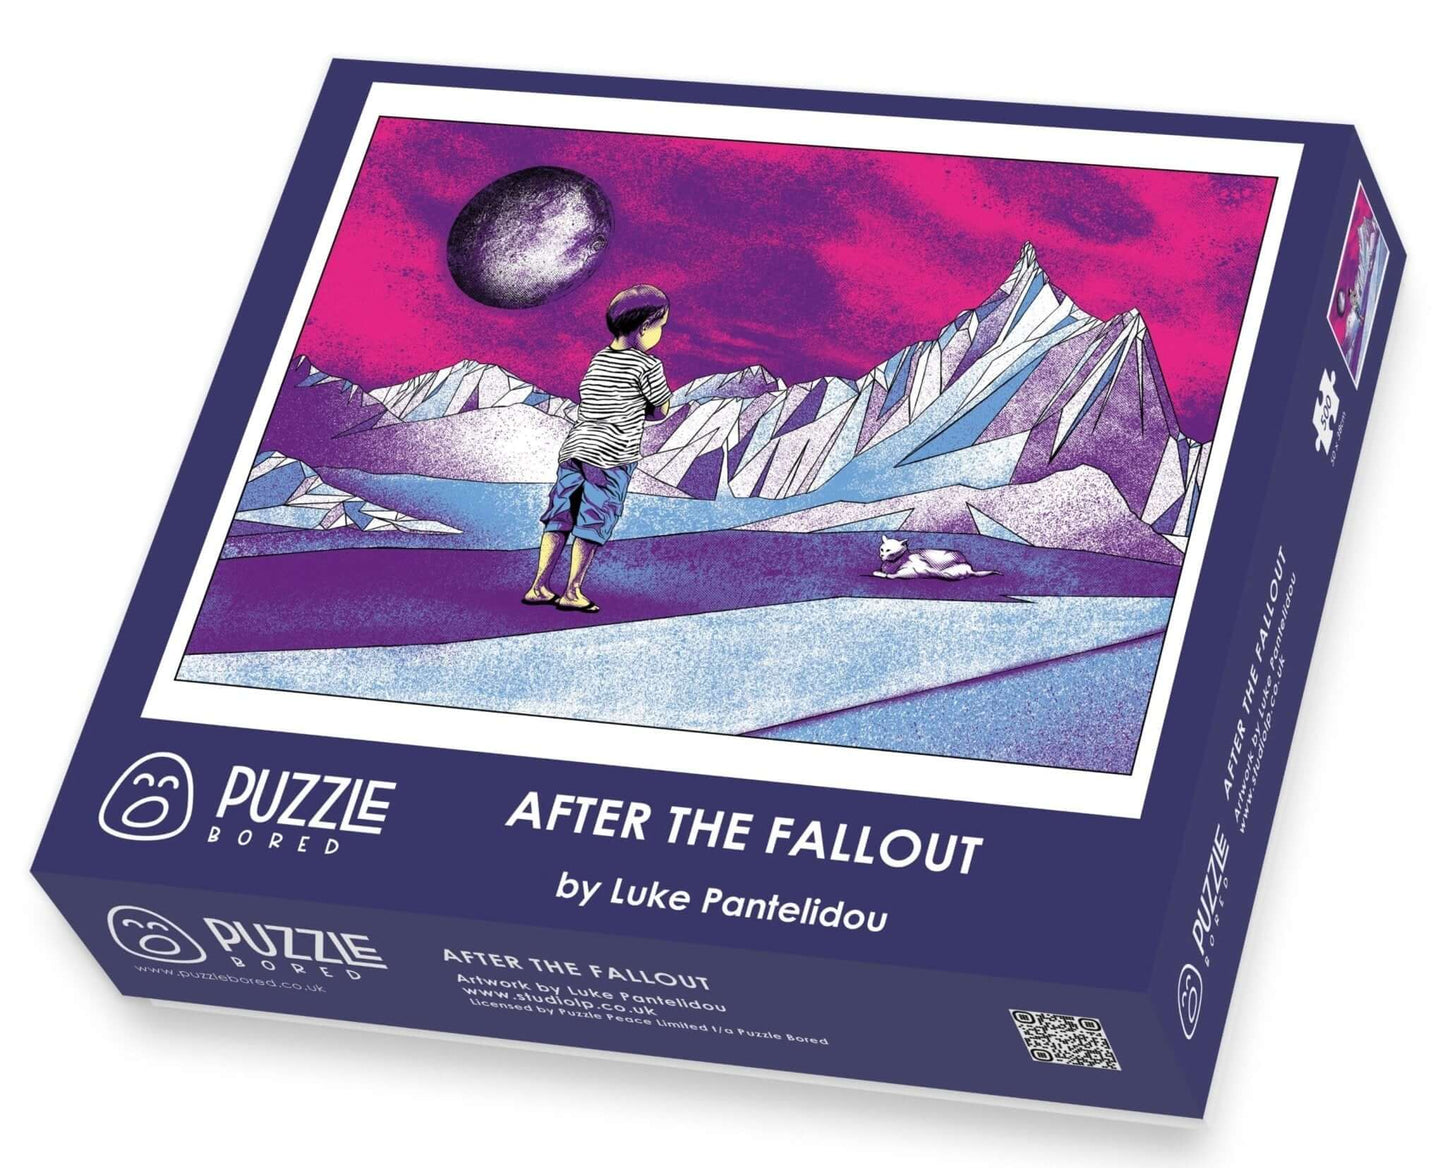 After the Fallout by Luke Pantelidou - Puzzle Bored